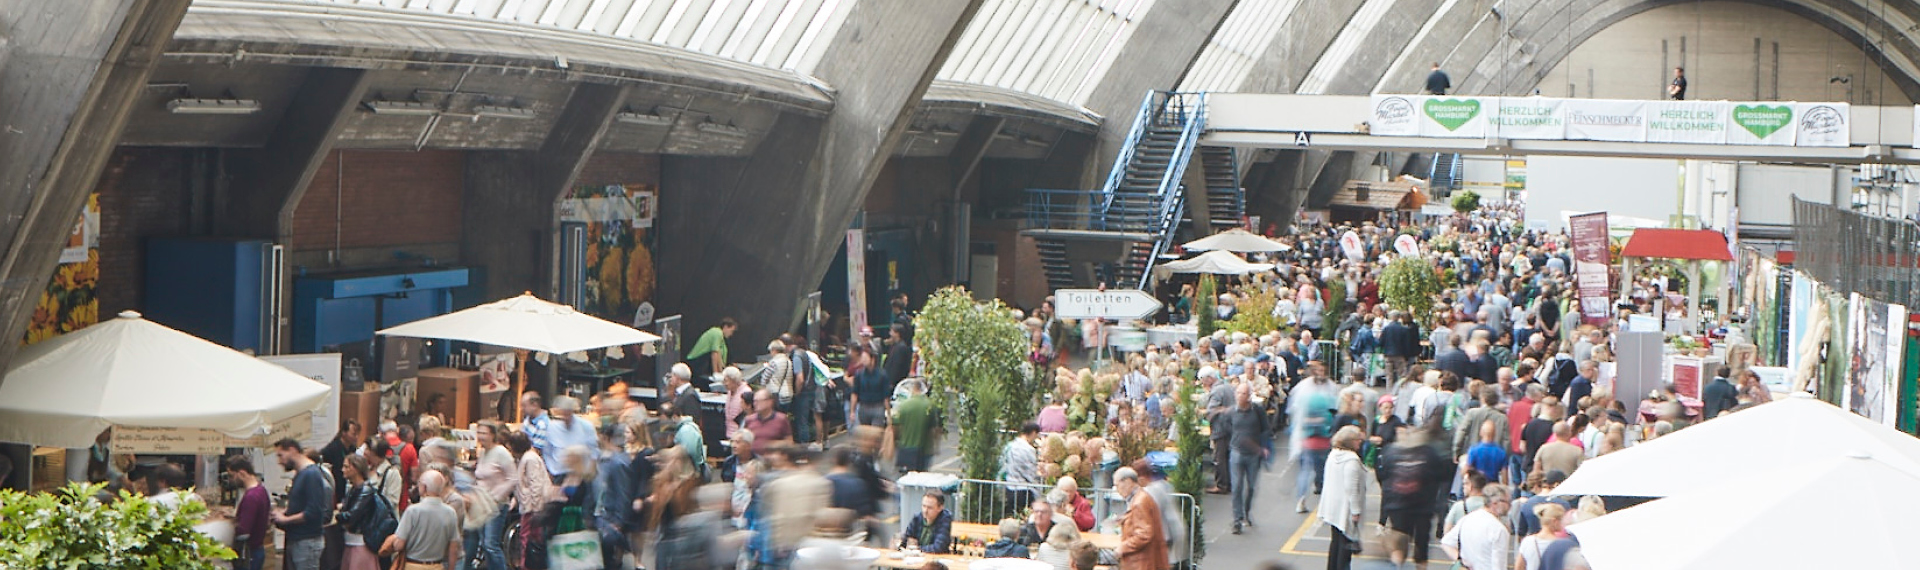 Besuchertreiebn auf dem Food Market Hamburg in der Großmarkthalle